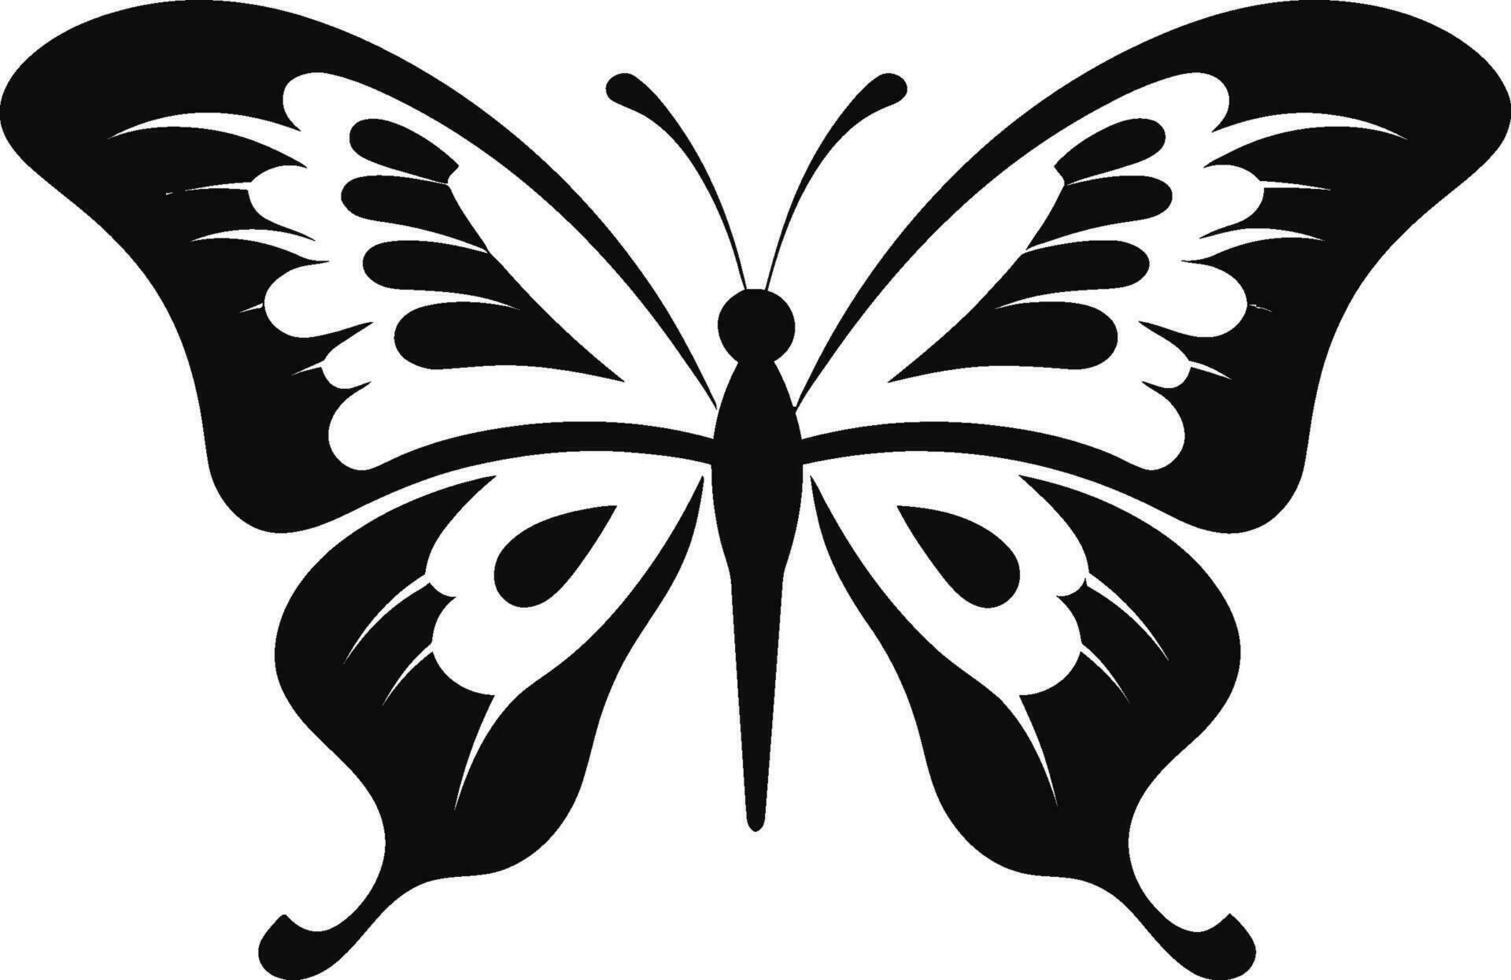 mariposas elegancia oscuro deleite emblema debajo el horizonte medianoche monocromo maravilla vector